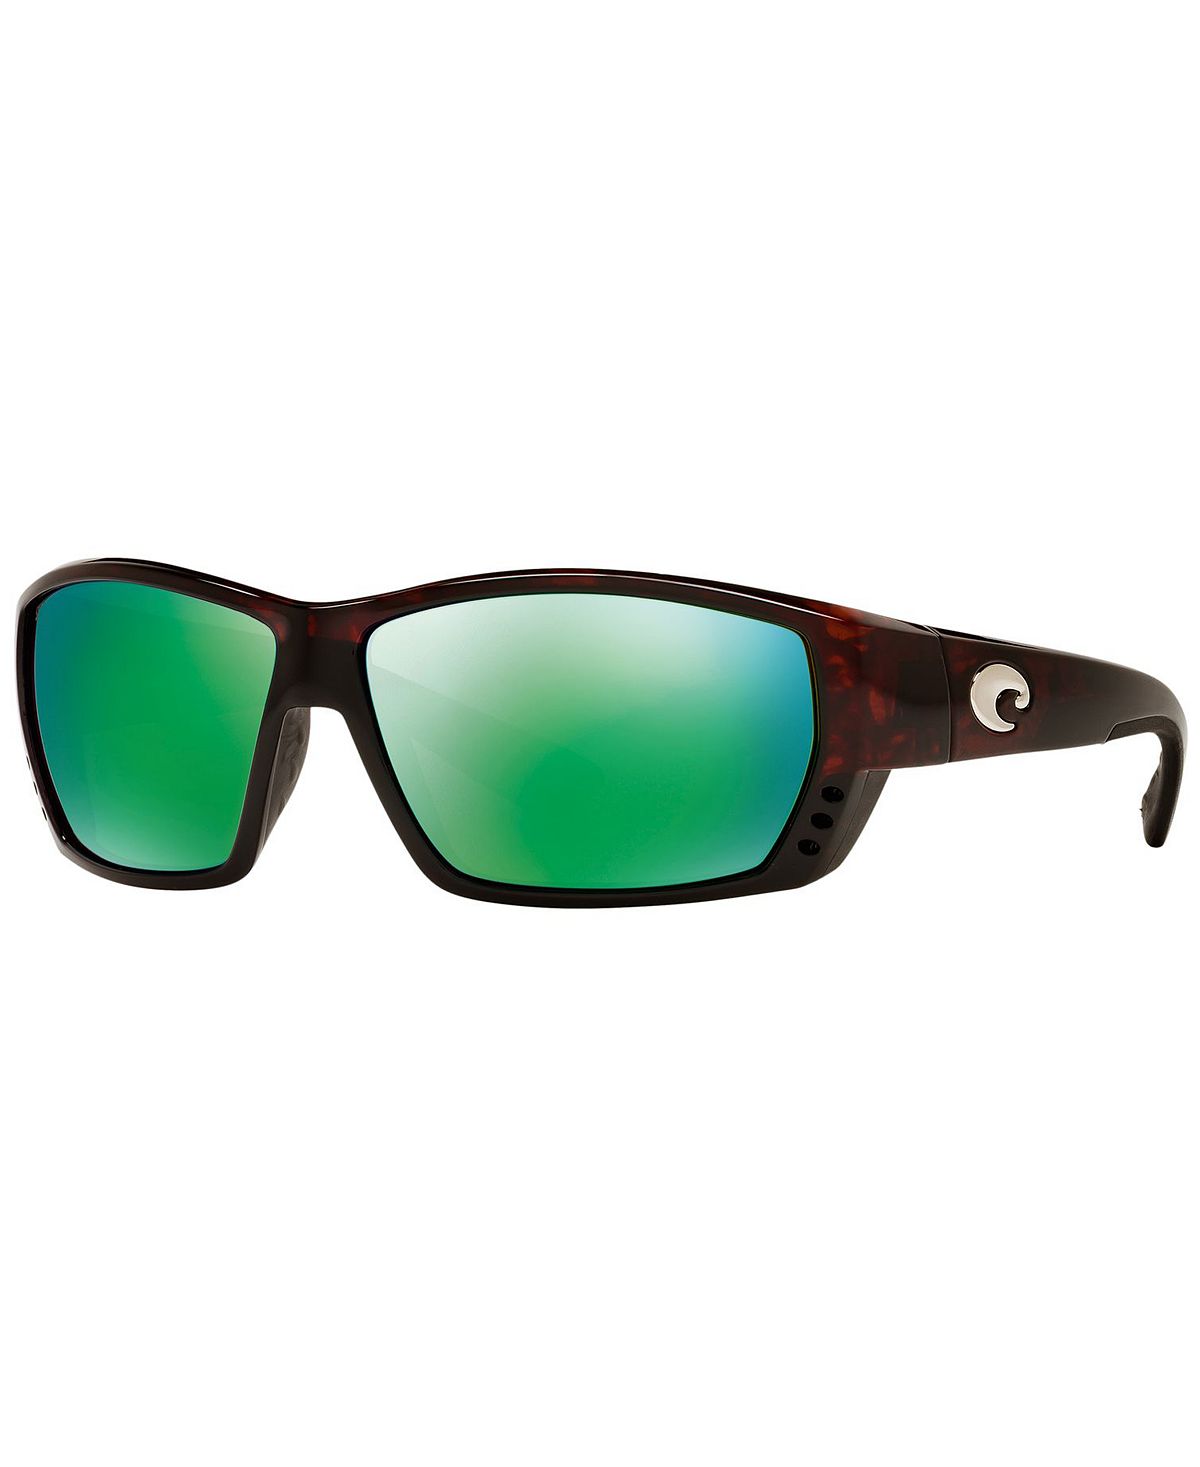 Поляризованные солнцезащитные очки, TUNA ALLEY Costa Del Mar sarthe 8x19 5x112 d66 45 et42 gun metallic mirror face